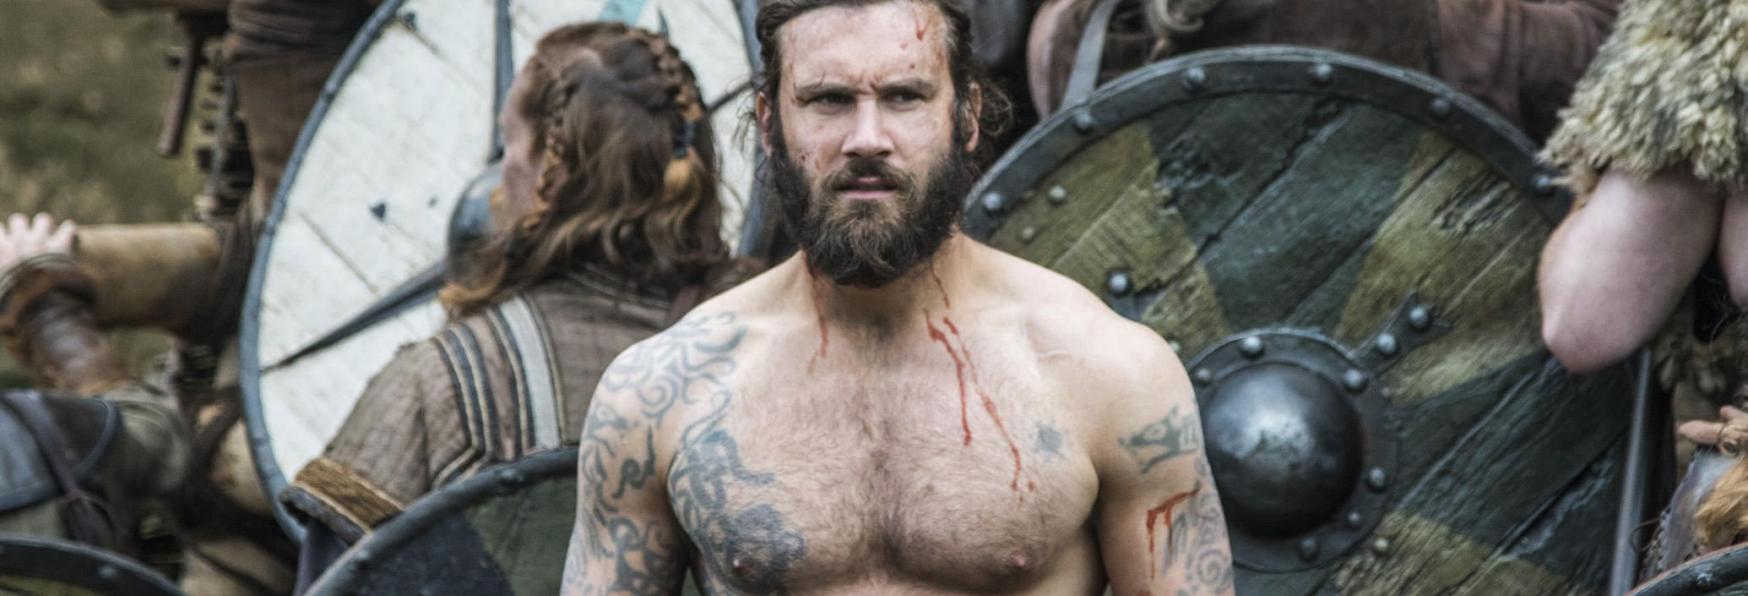 Vikings: conosciamo finalmente il Significato dei Tatuaggi di Rollo